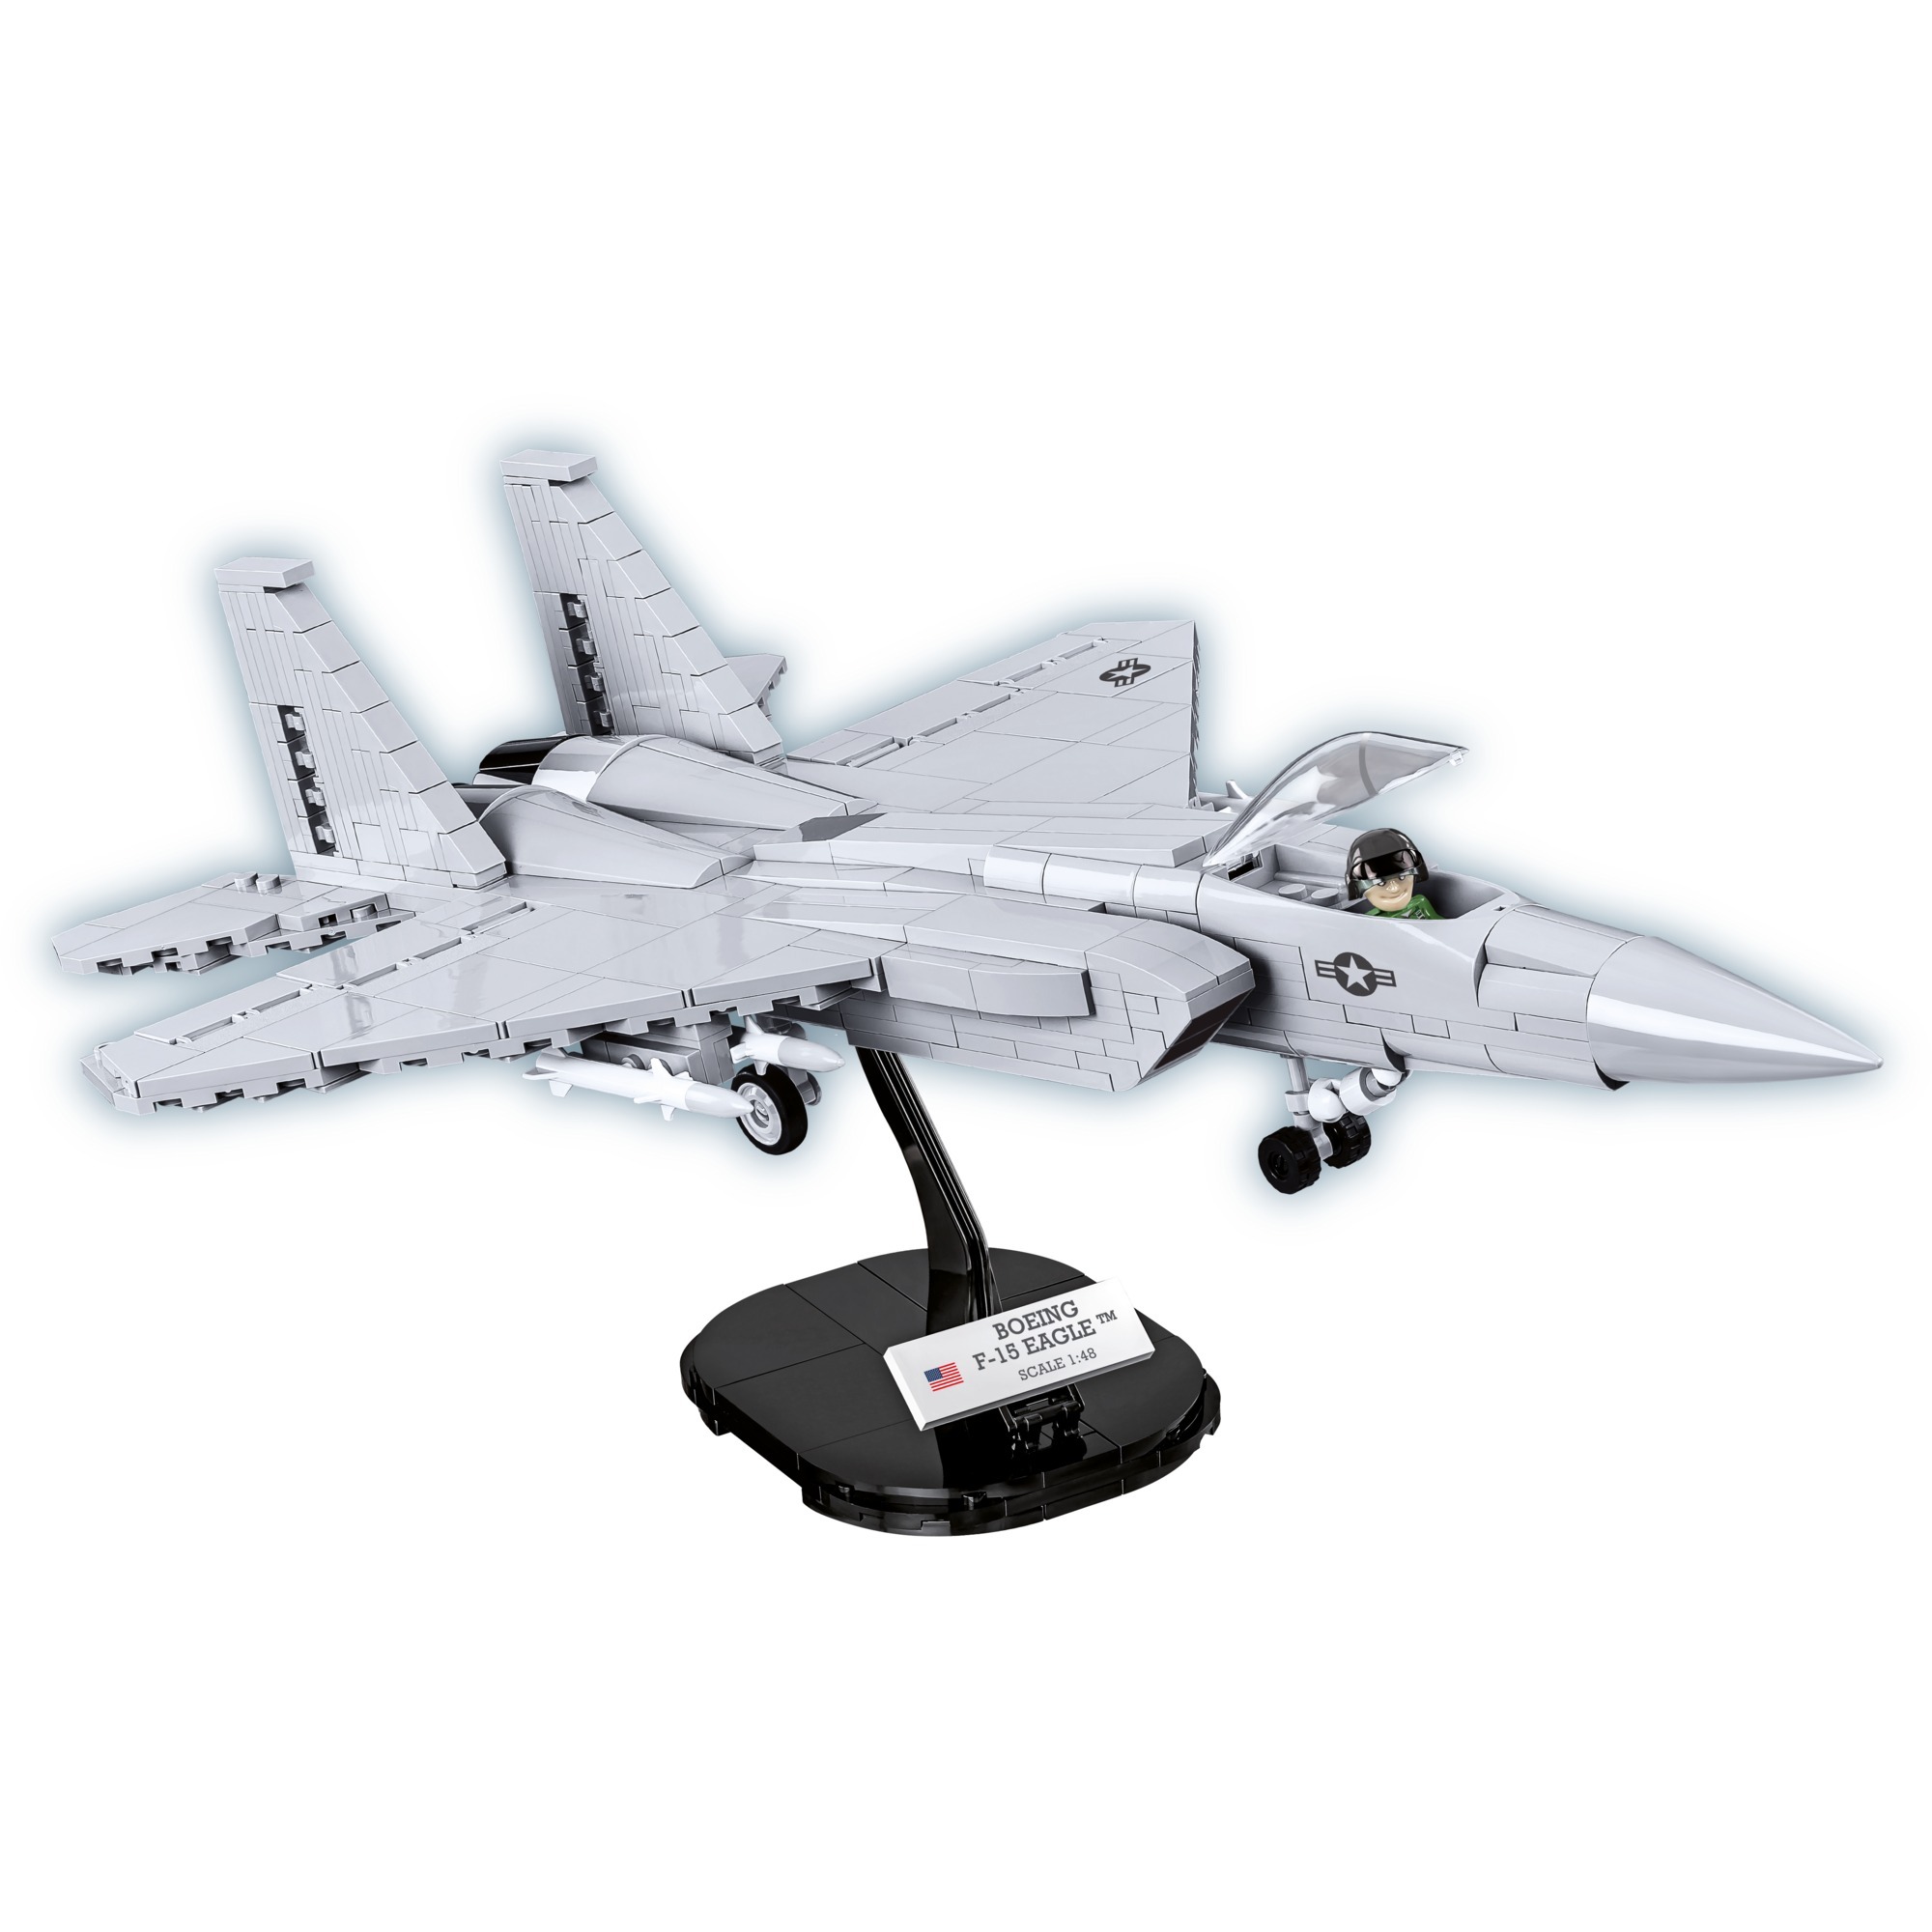 Image of Alternate - Armed Forces F-15 Eagle, Konstruktionsspielzeug online einkaufen bei Alternate